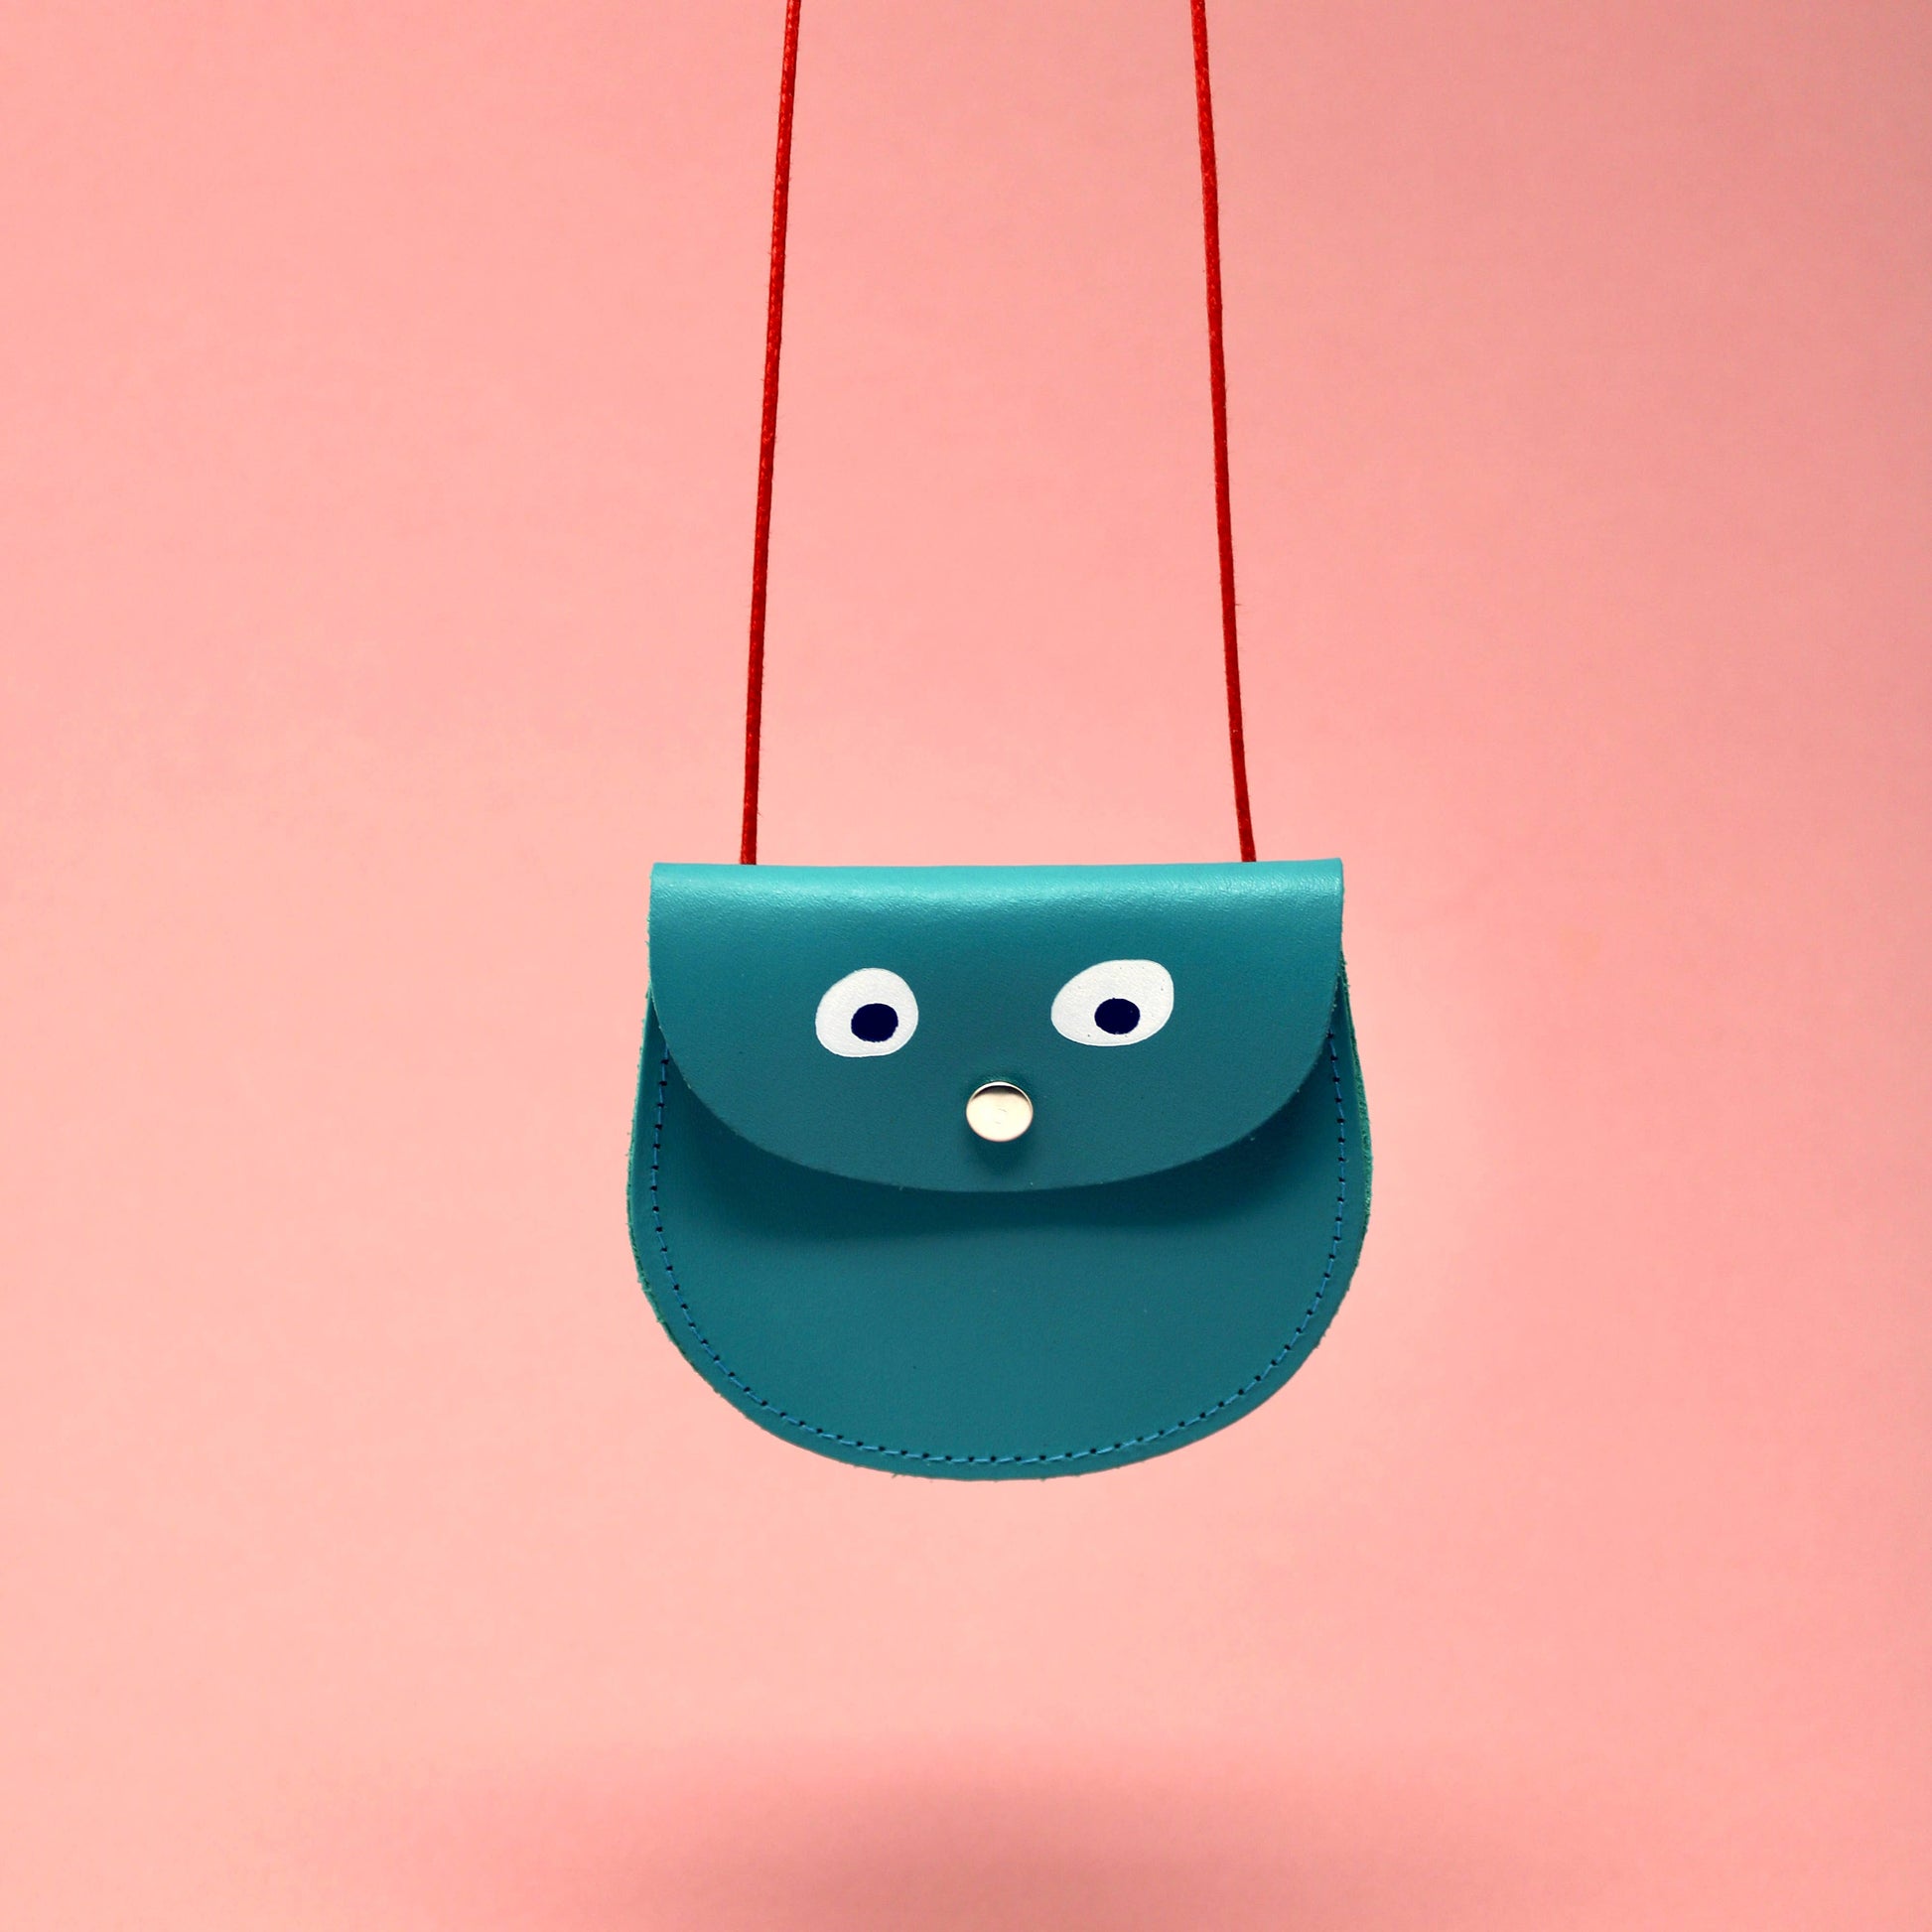 googly eye pocket money purse - turquoise